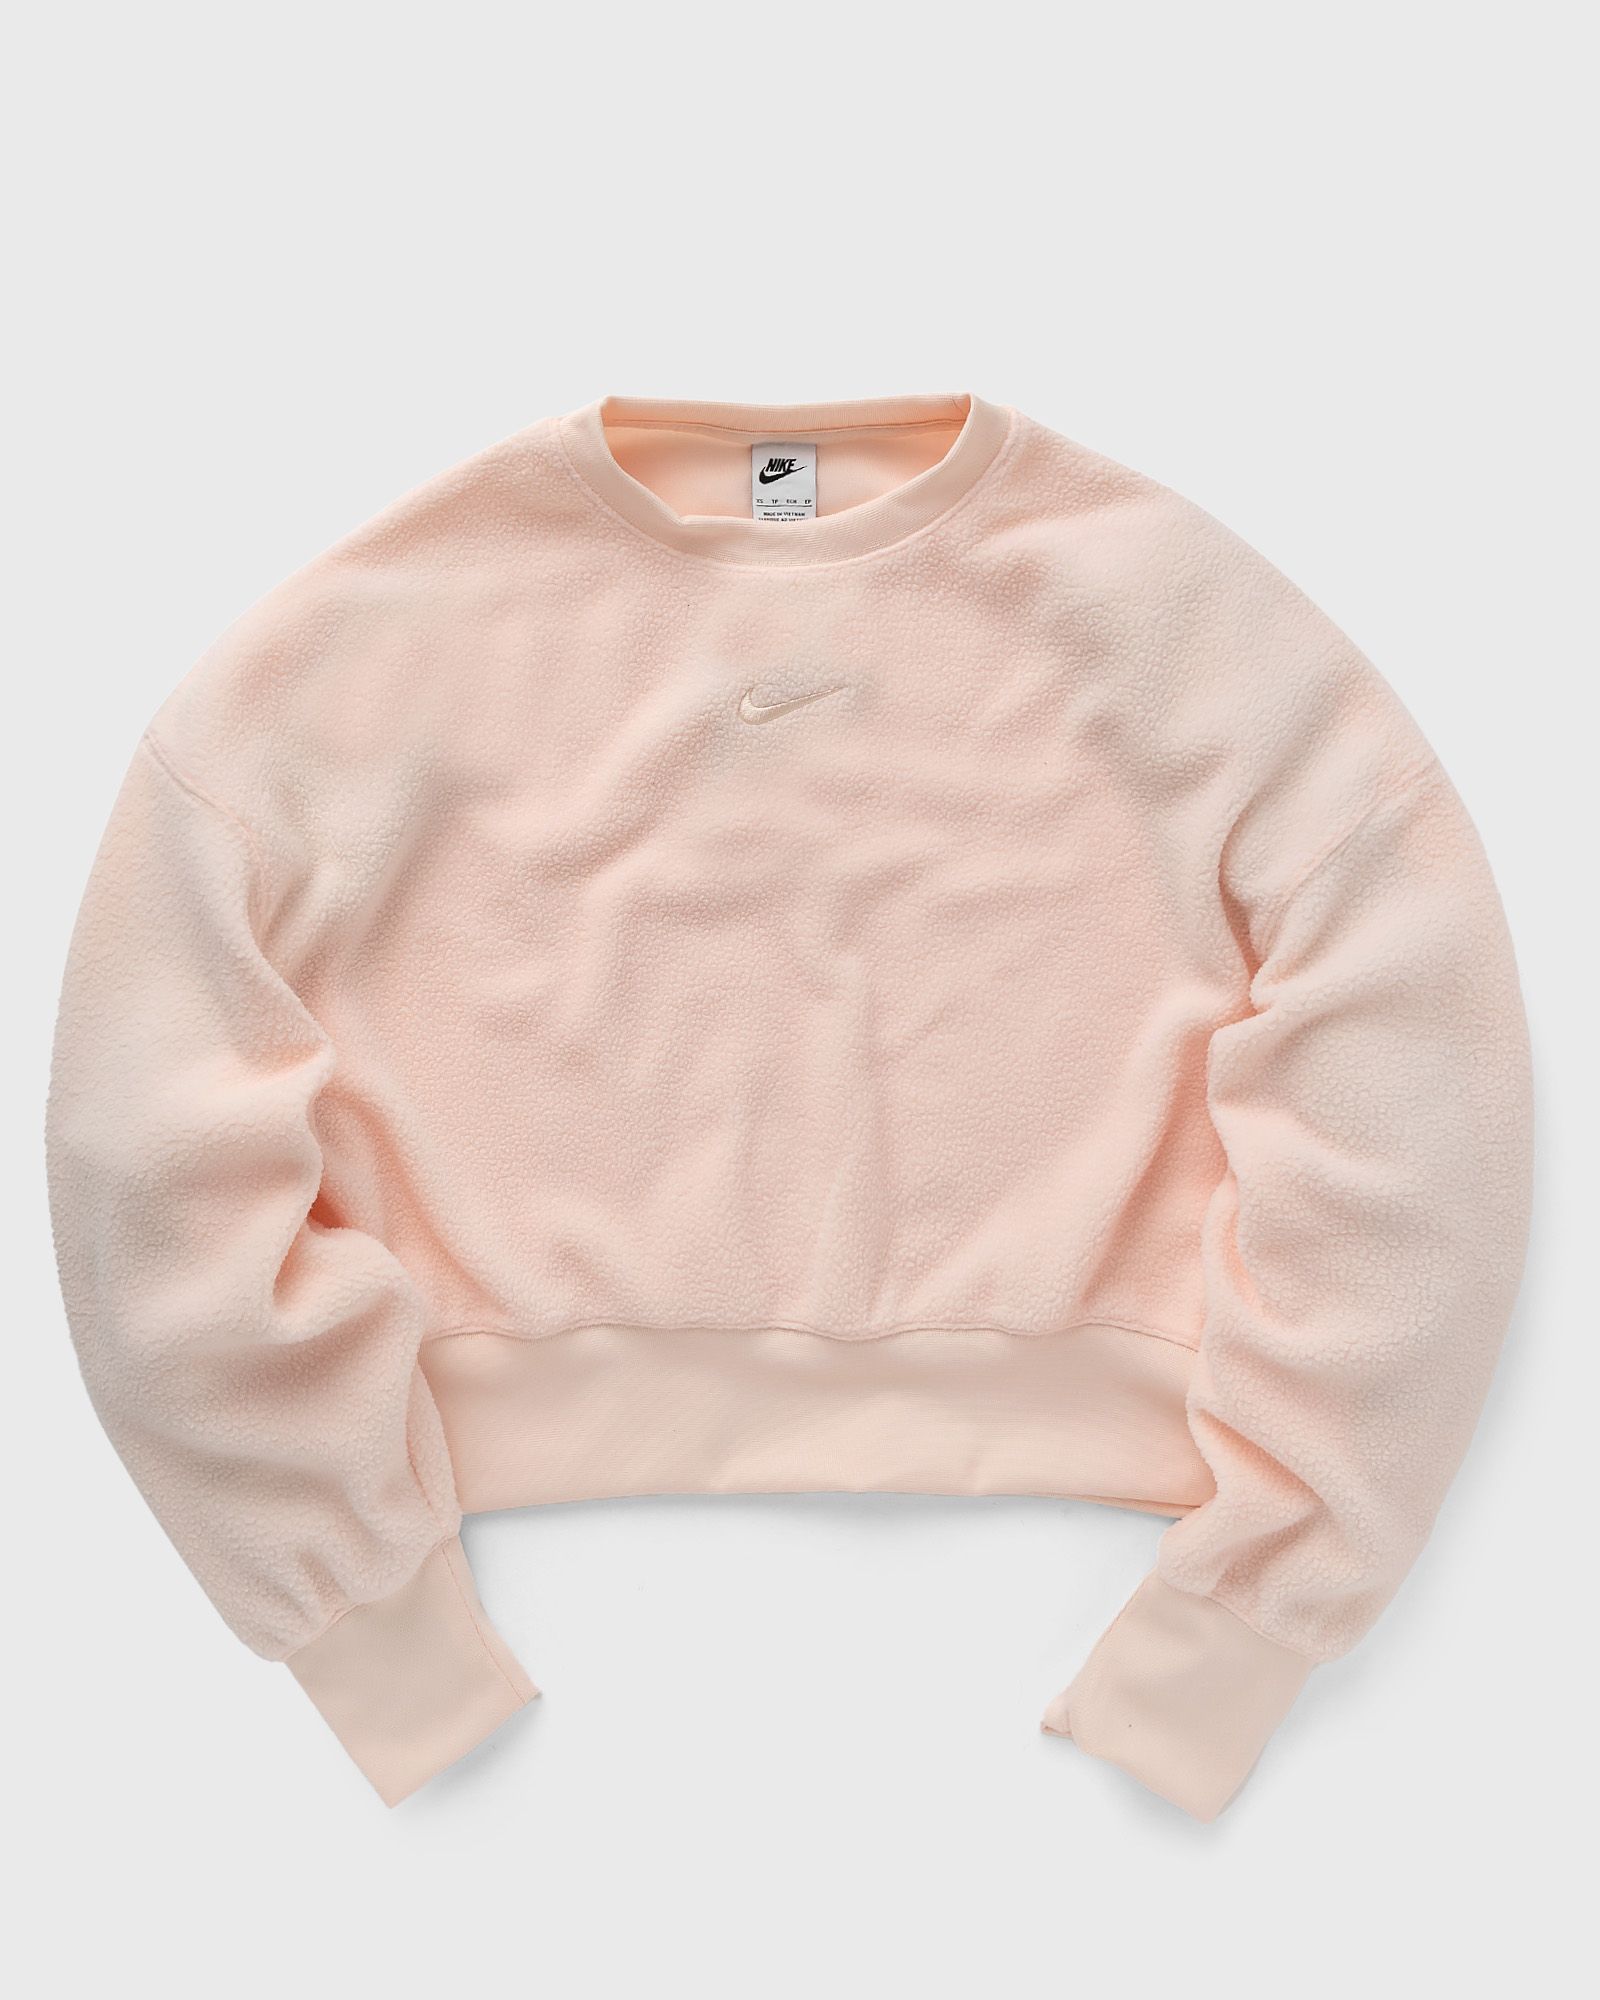 Nike - sportswear plush women's mod crop crew-neck sweatshirt women sweatshirts pink in größe:xs